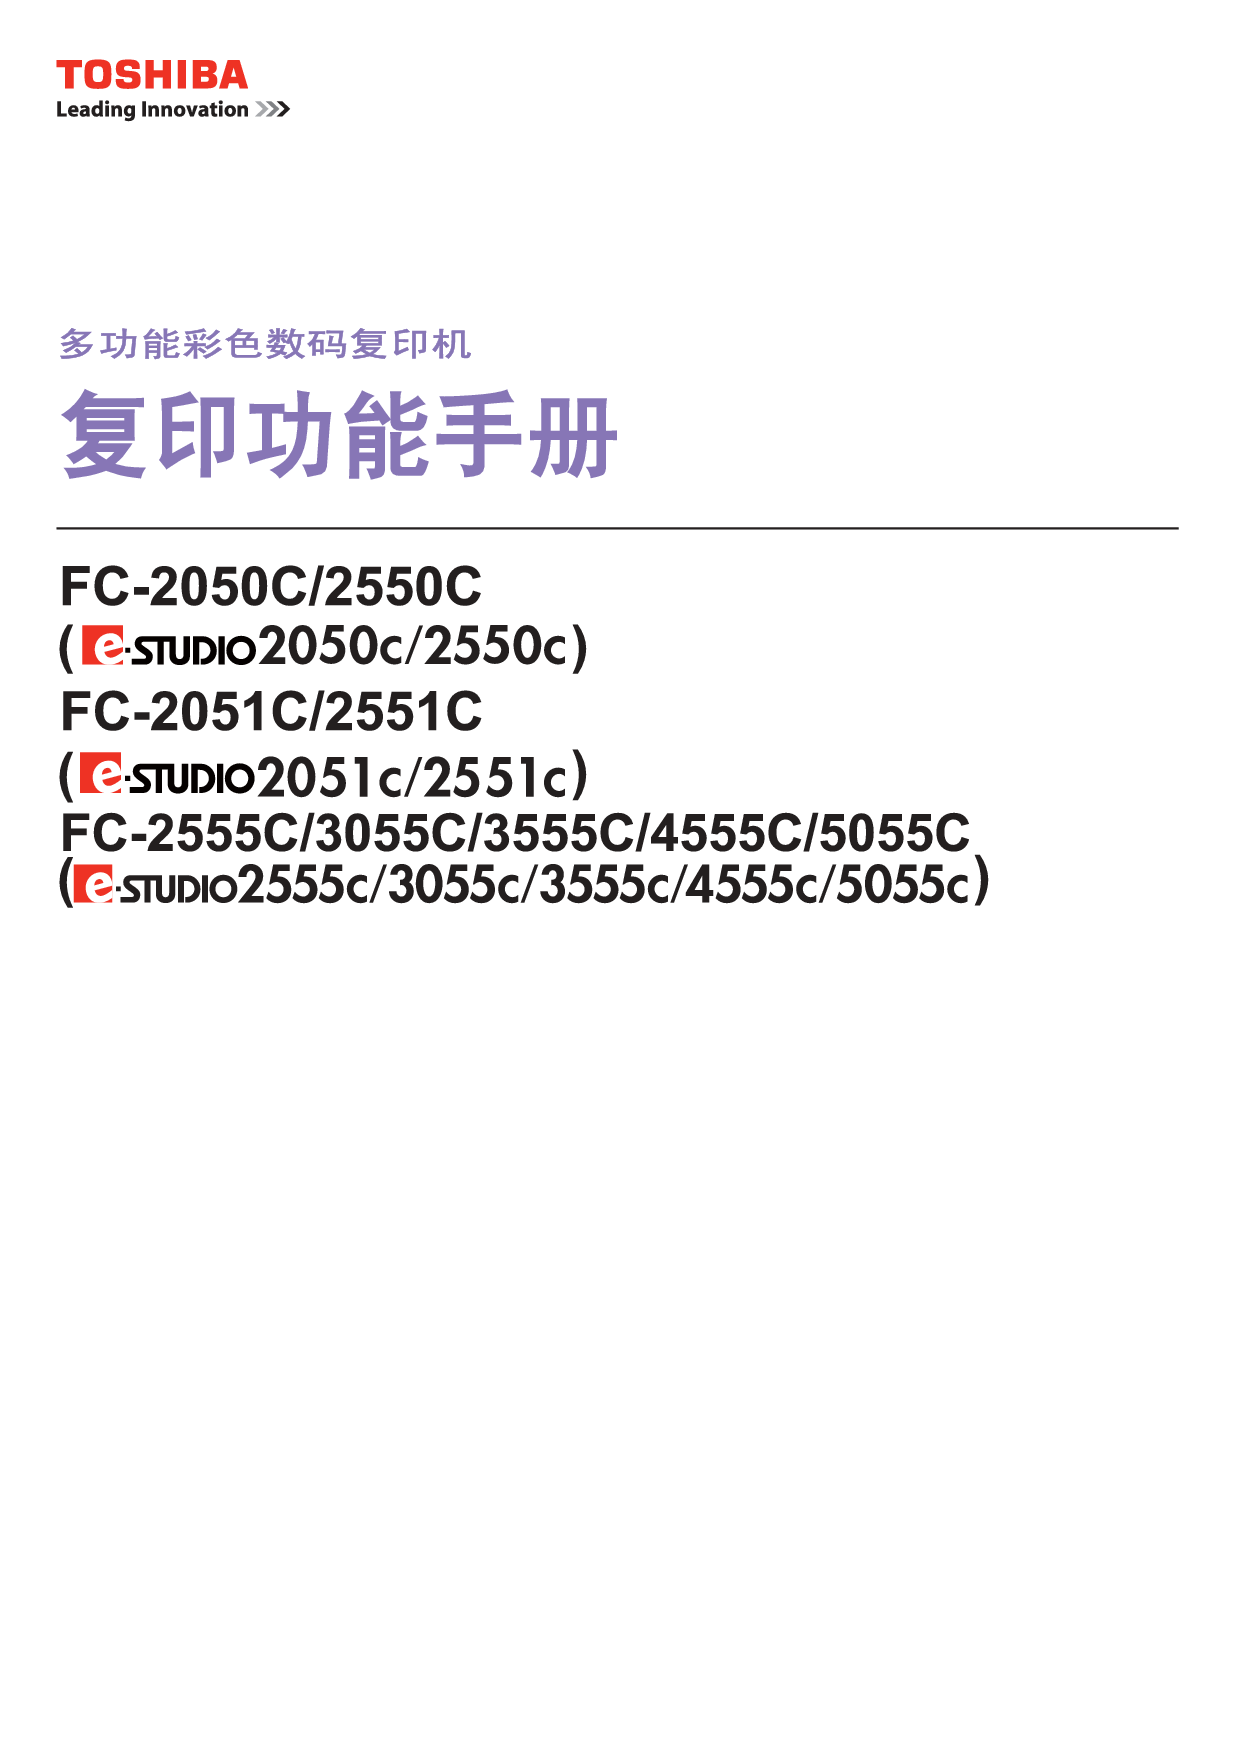 东芝 Toshiba FC-2050C, FC-3555C, e-STUDIO 2050C 复印 用户手册 封面